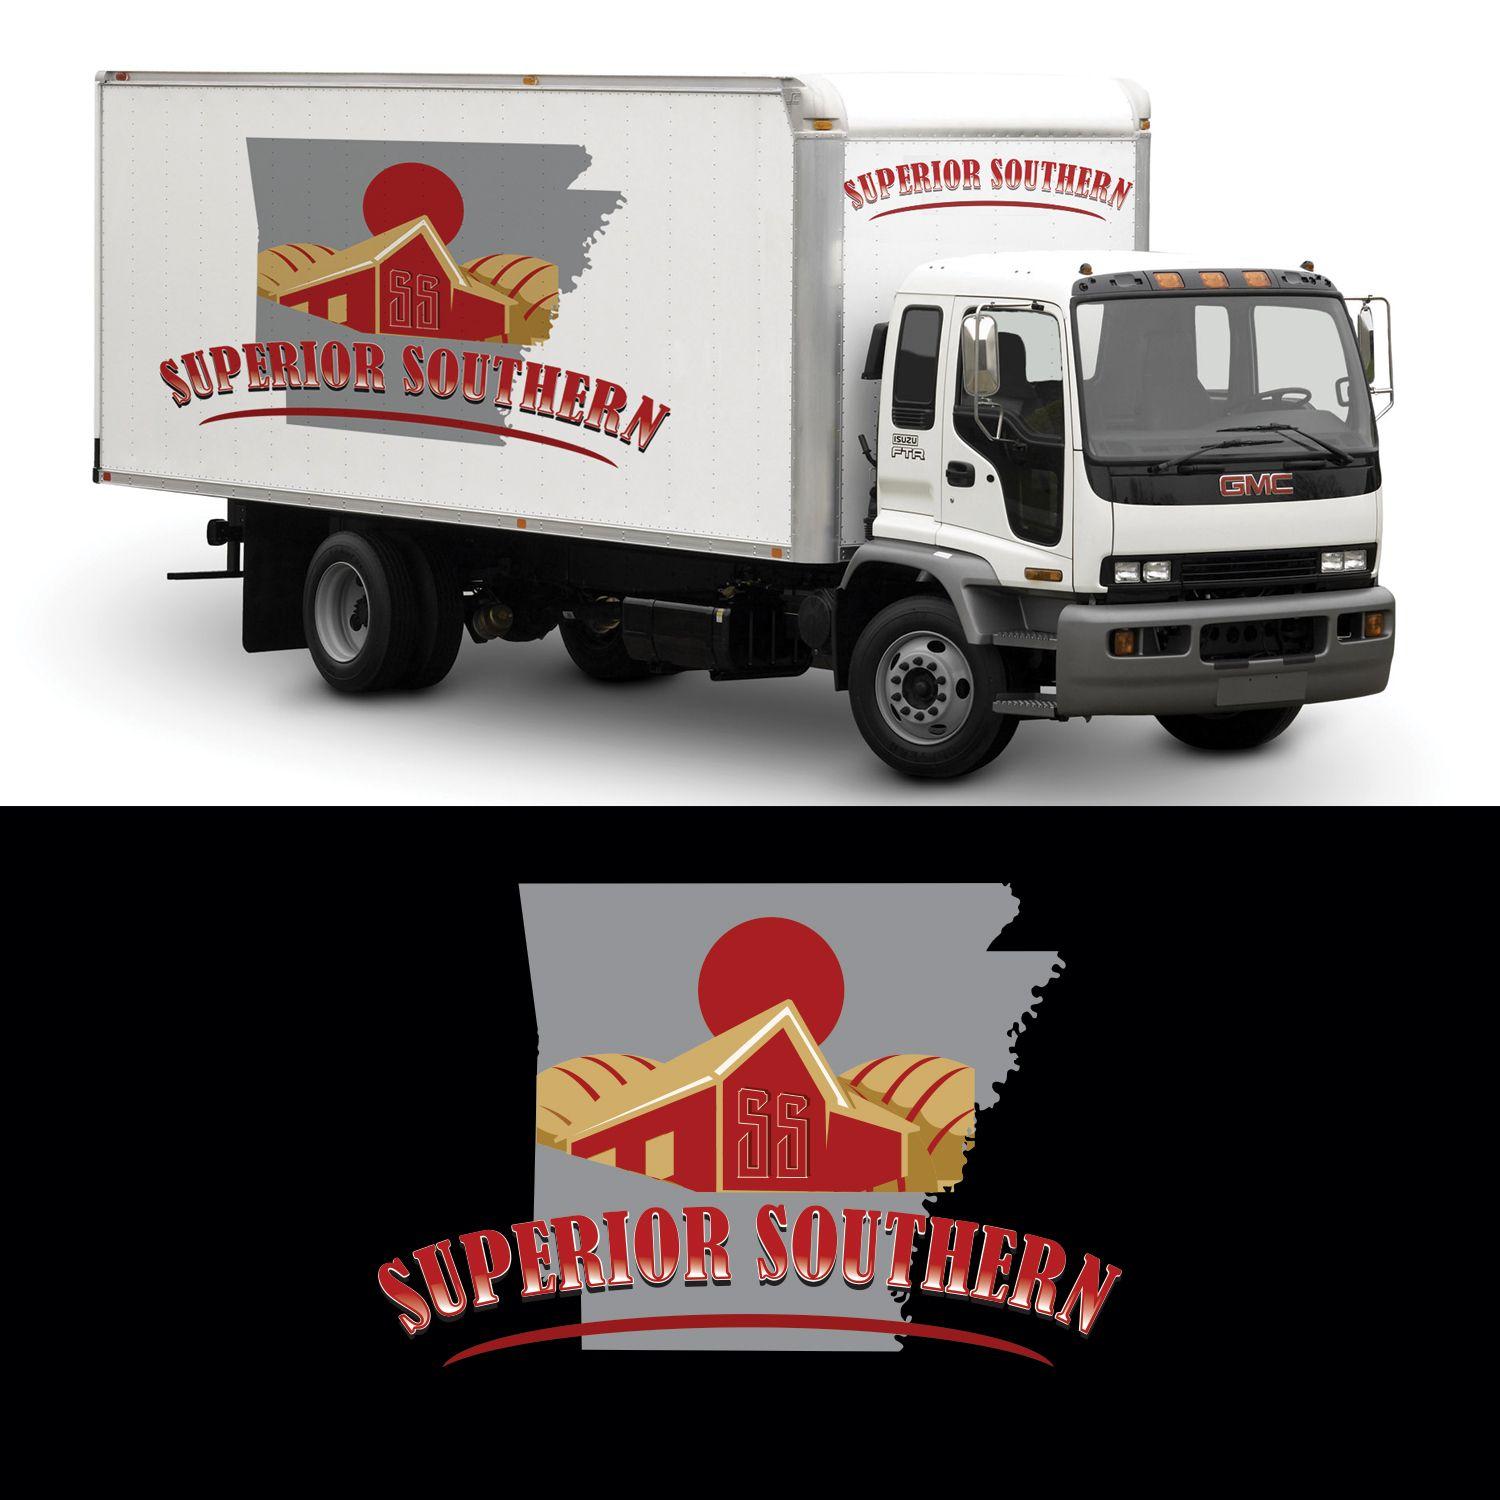 Construction Truck Company Logo - Upmarket, Bold, Construction Company Logo Design for Southern ...